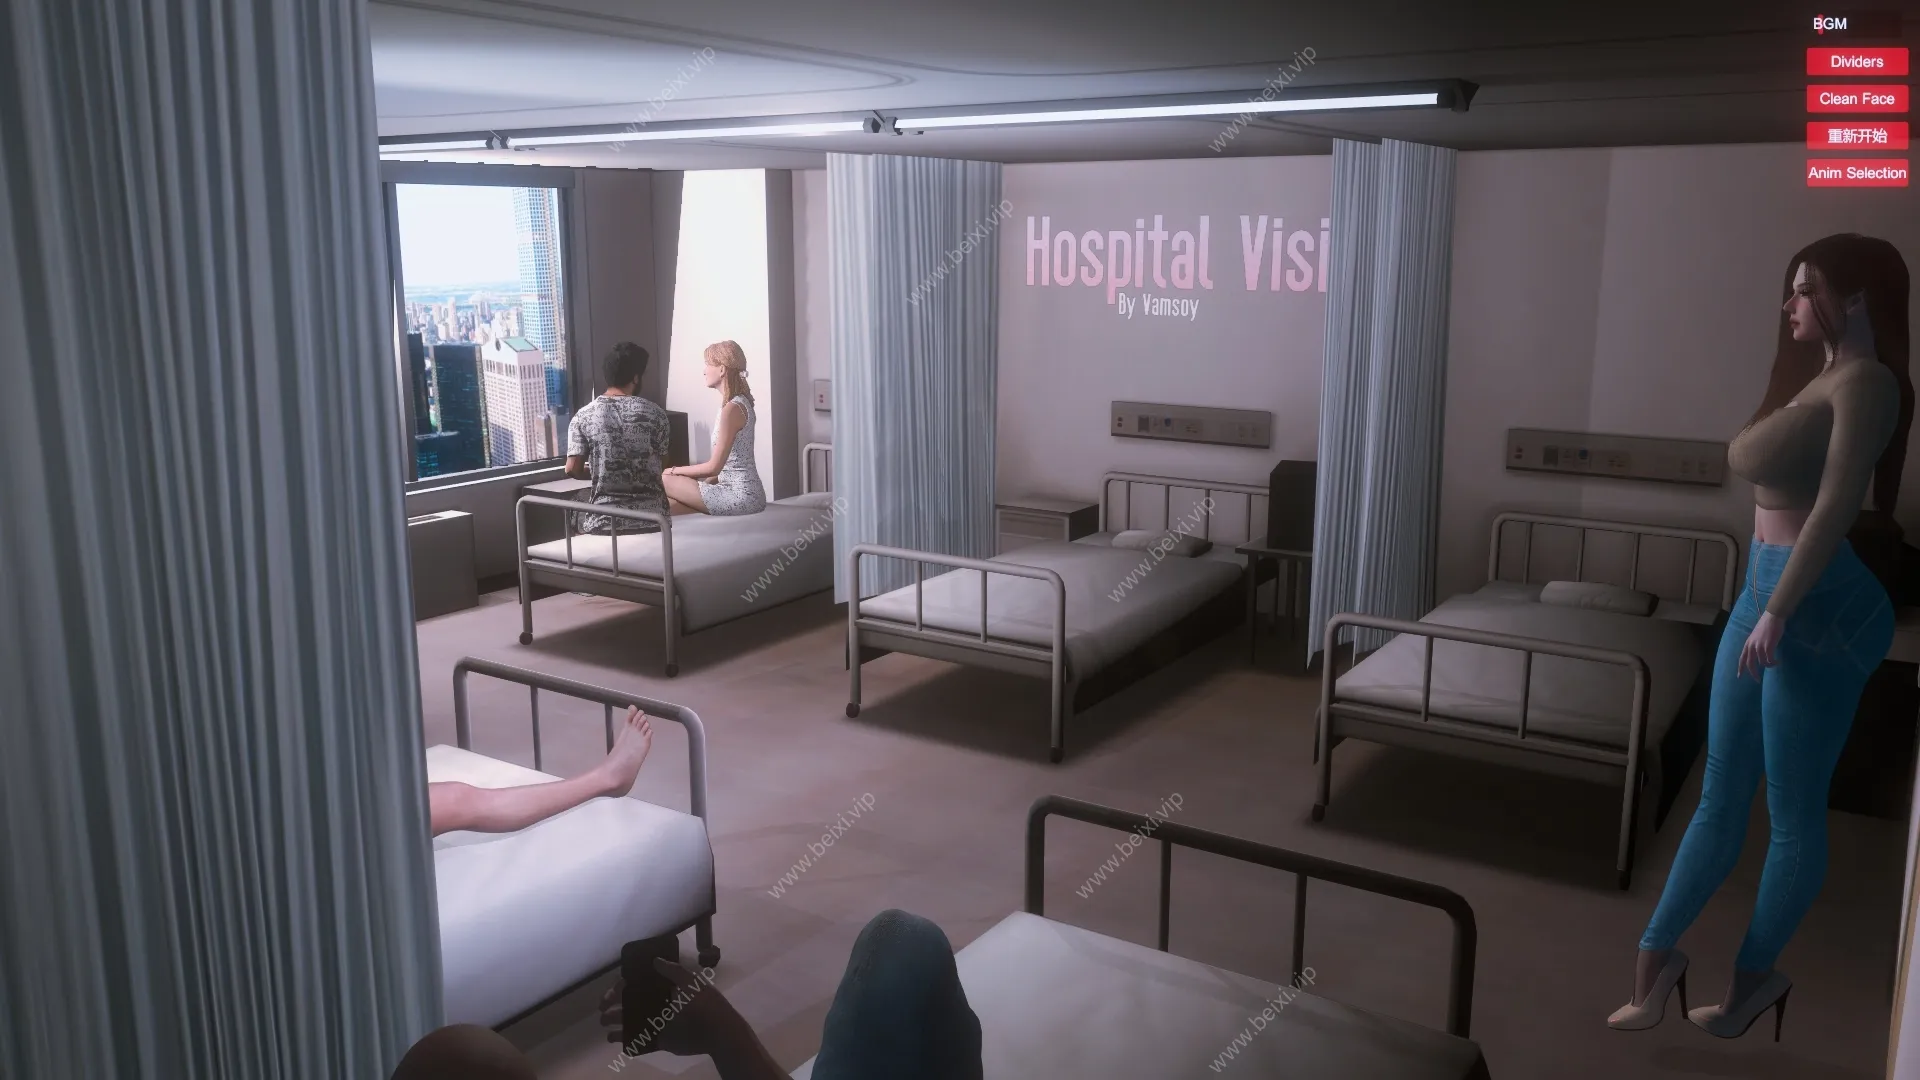 Hospital_Visit_Part_I_1